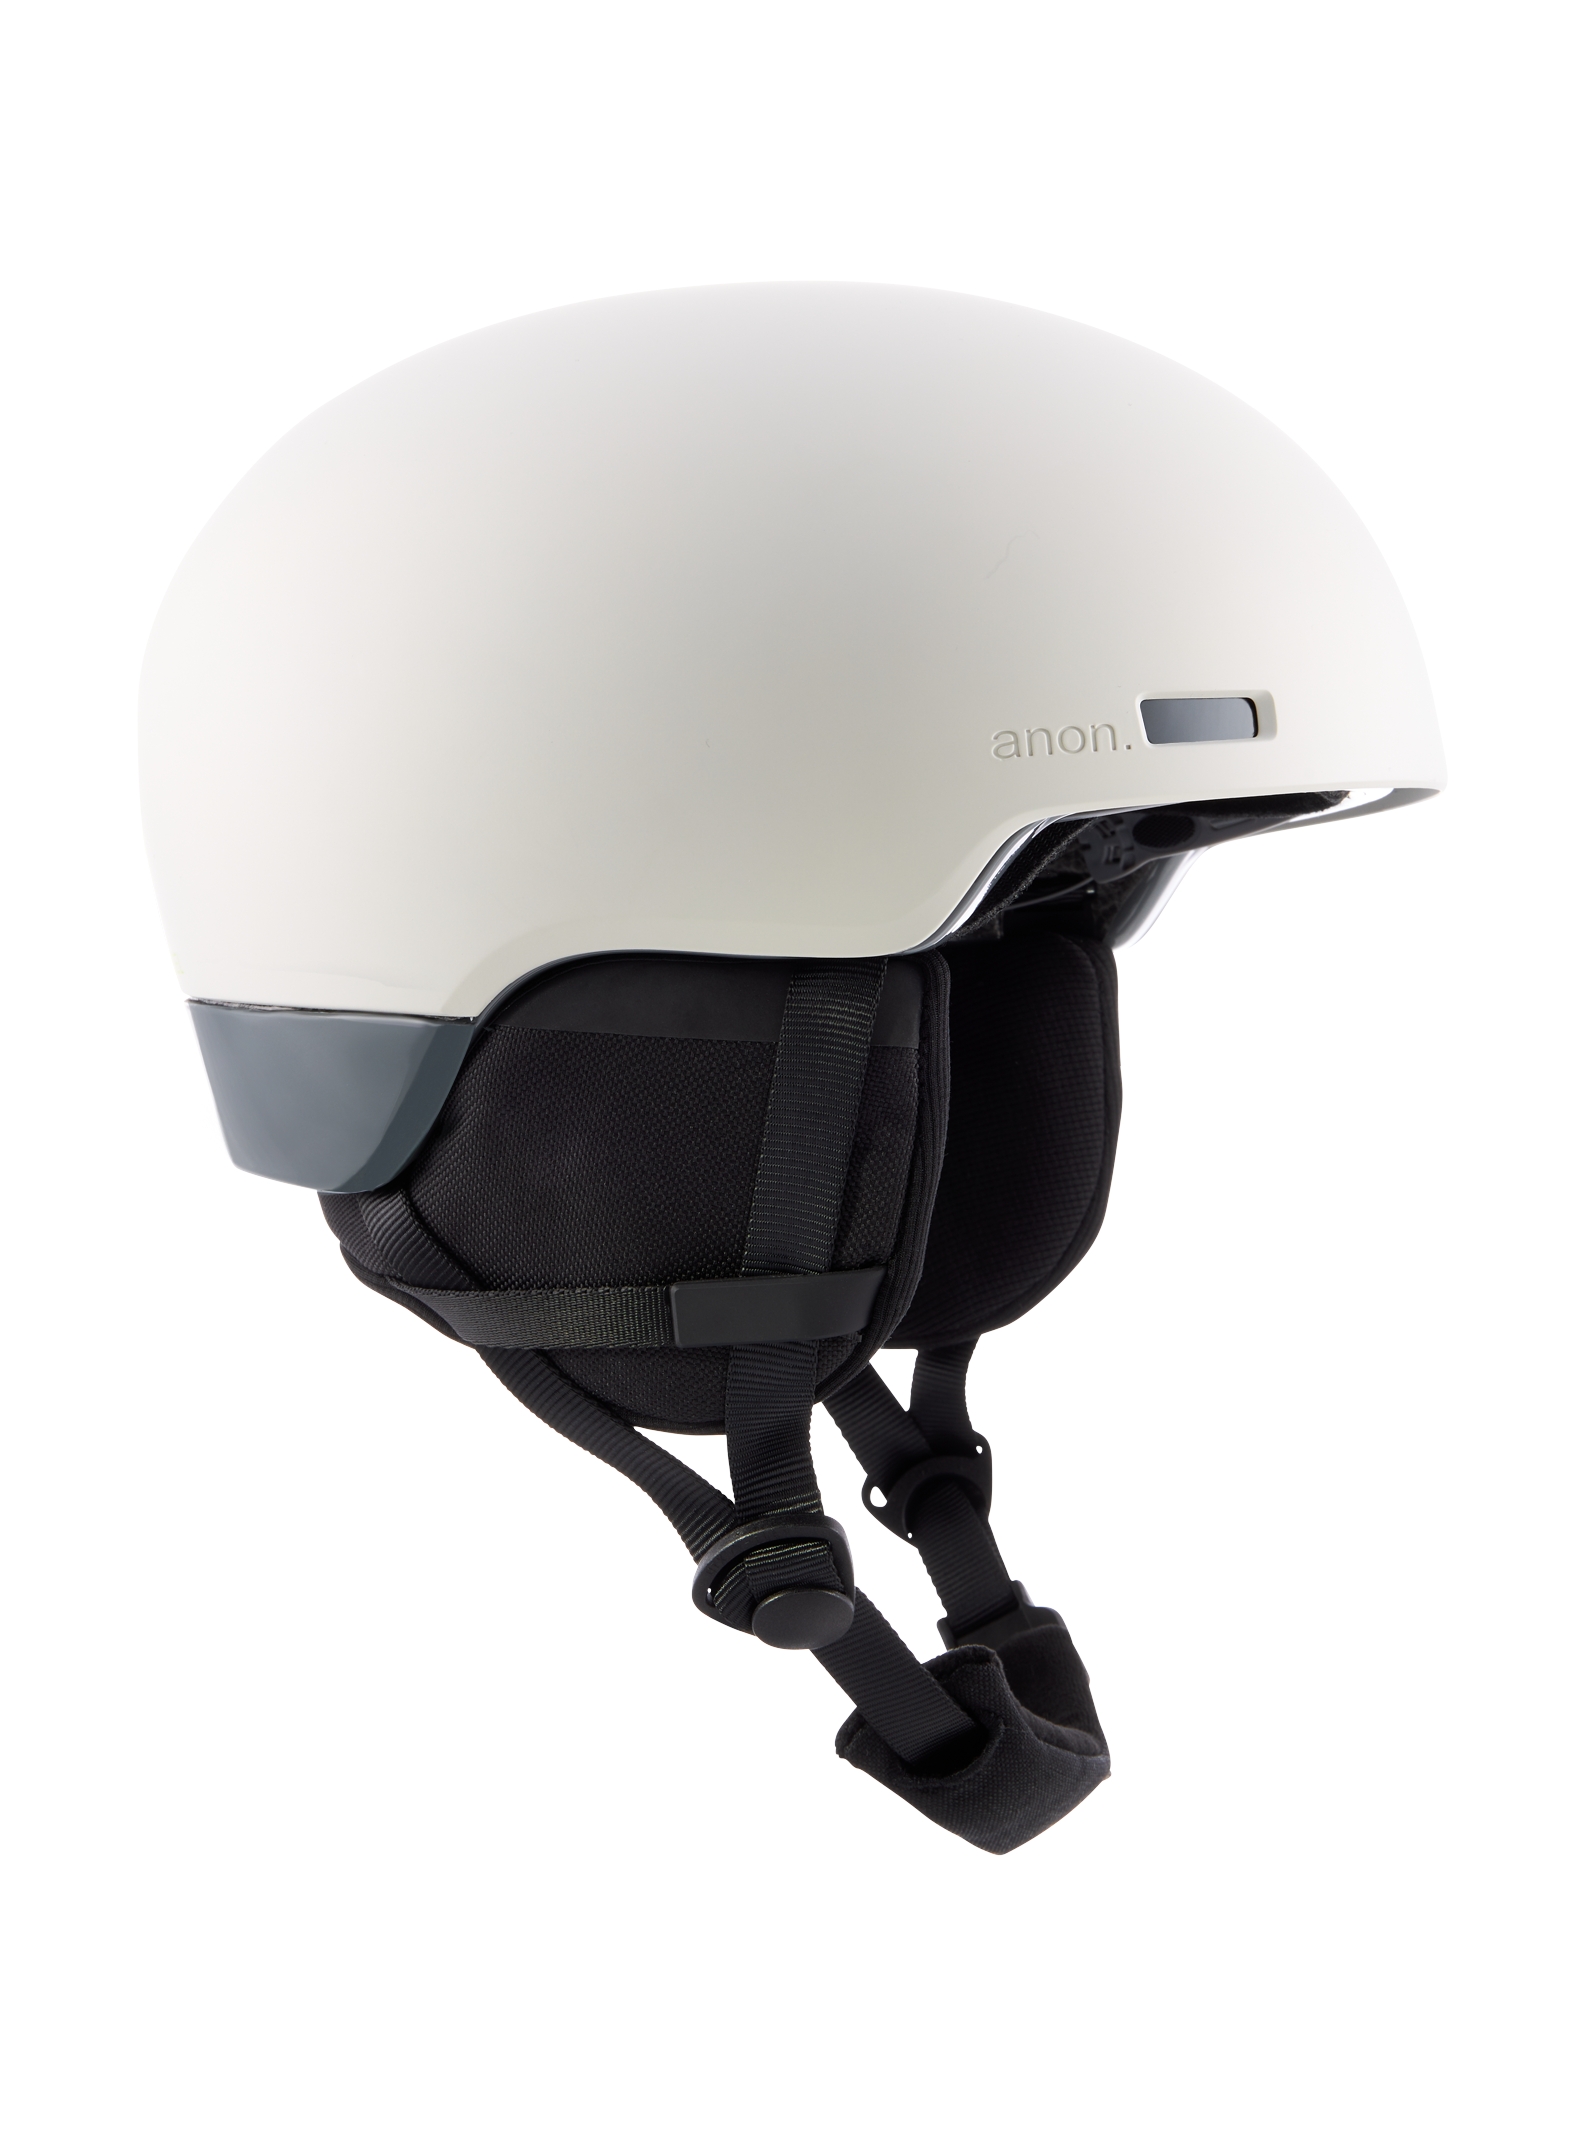 Anon Windham WaveCel Helmet - Gray